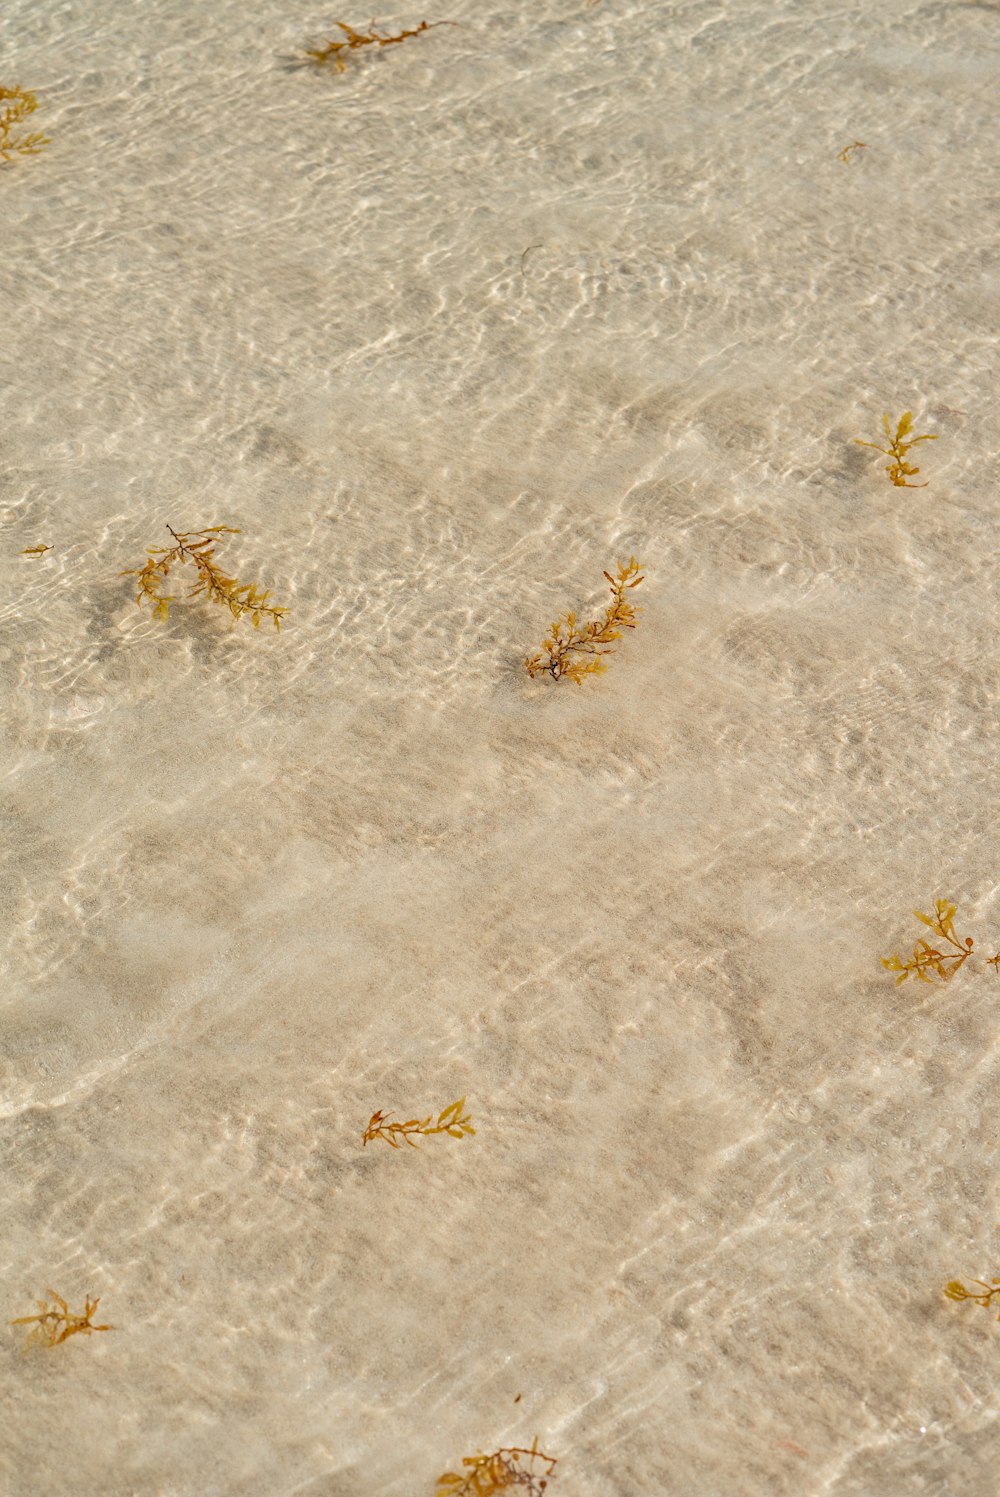 Un grupo de algas flotando en la cima de una playa de arena